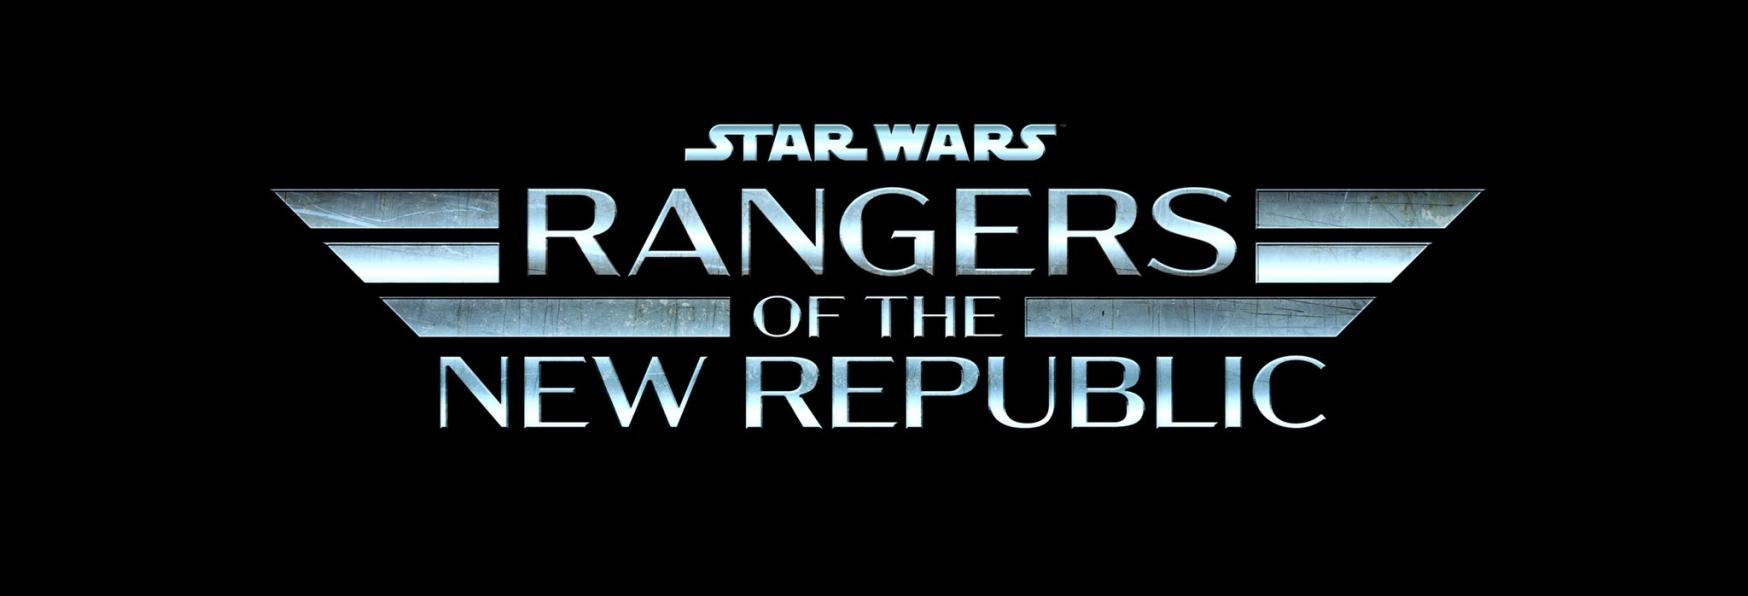 Star Wars: Rangers of the New Republic è stato Cancellato?